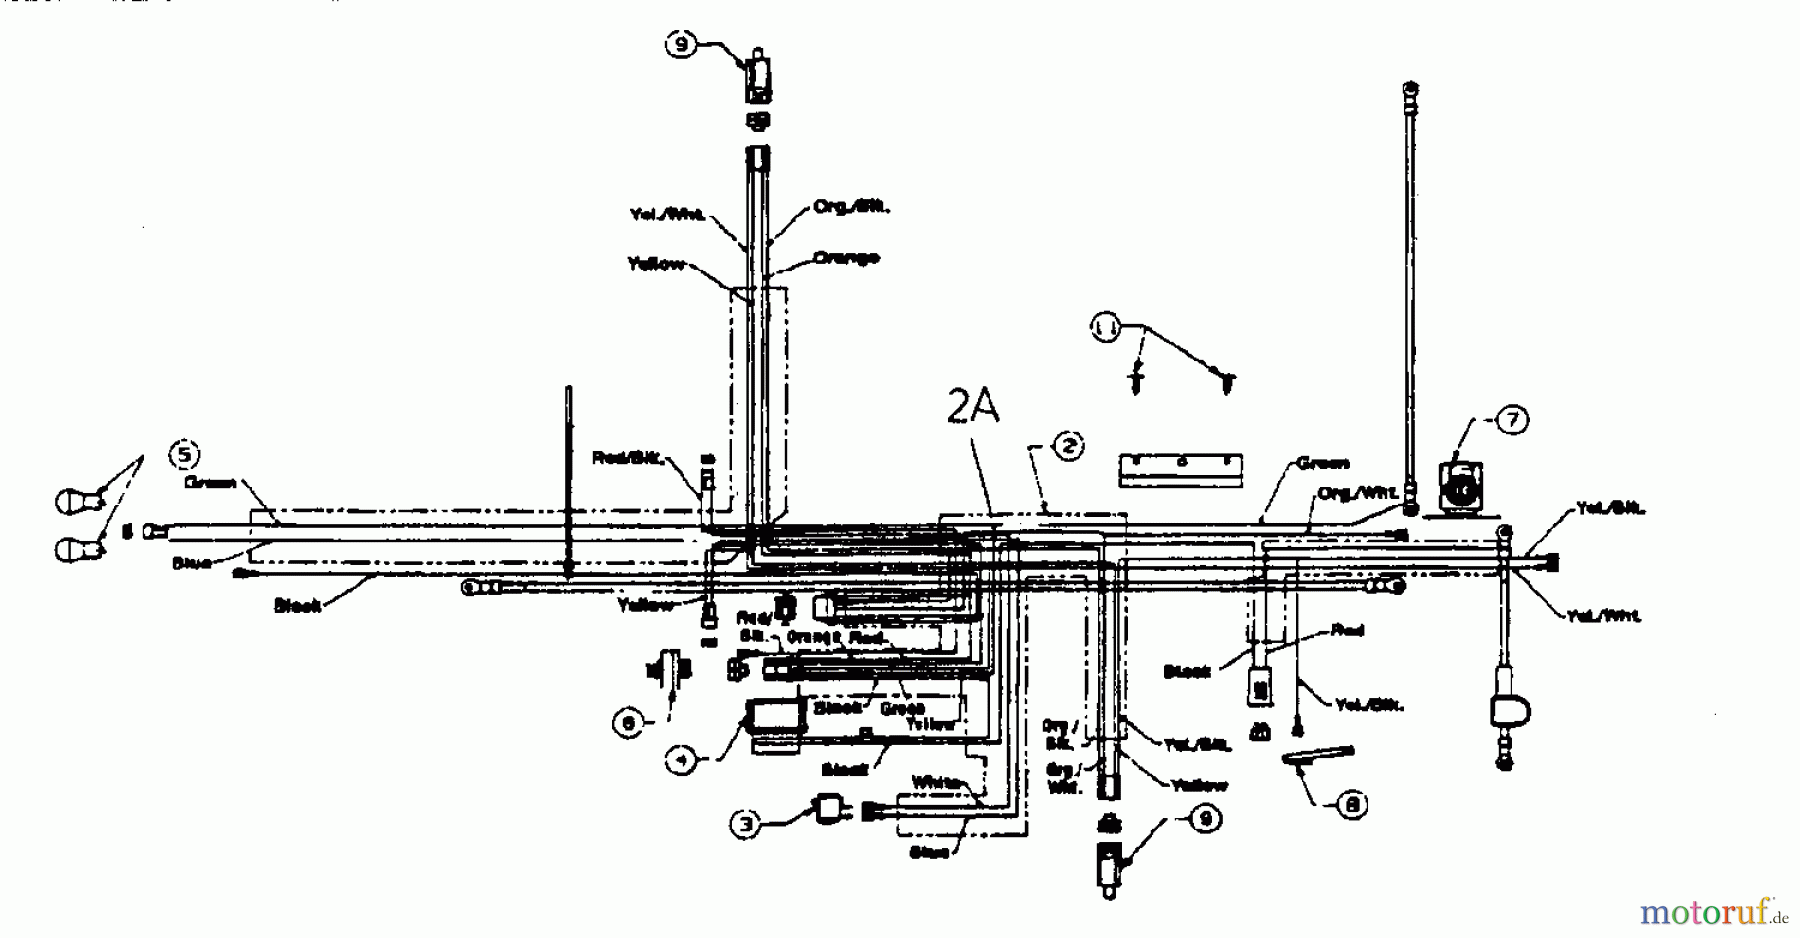  Edenparc Tracteurs de pelouse B 14596 13AM670F608  (1998) Plan electrique pour O.H.V.